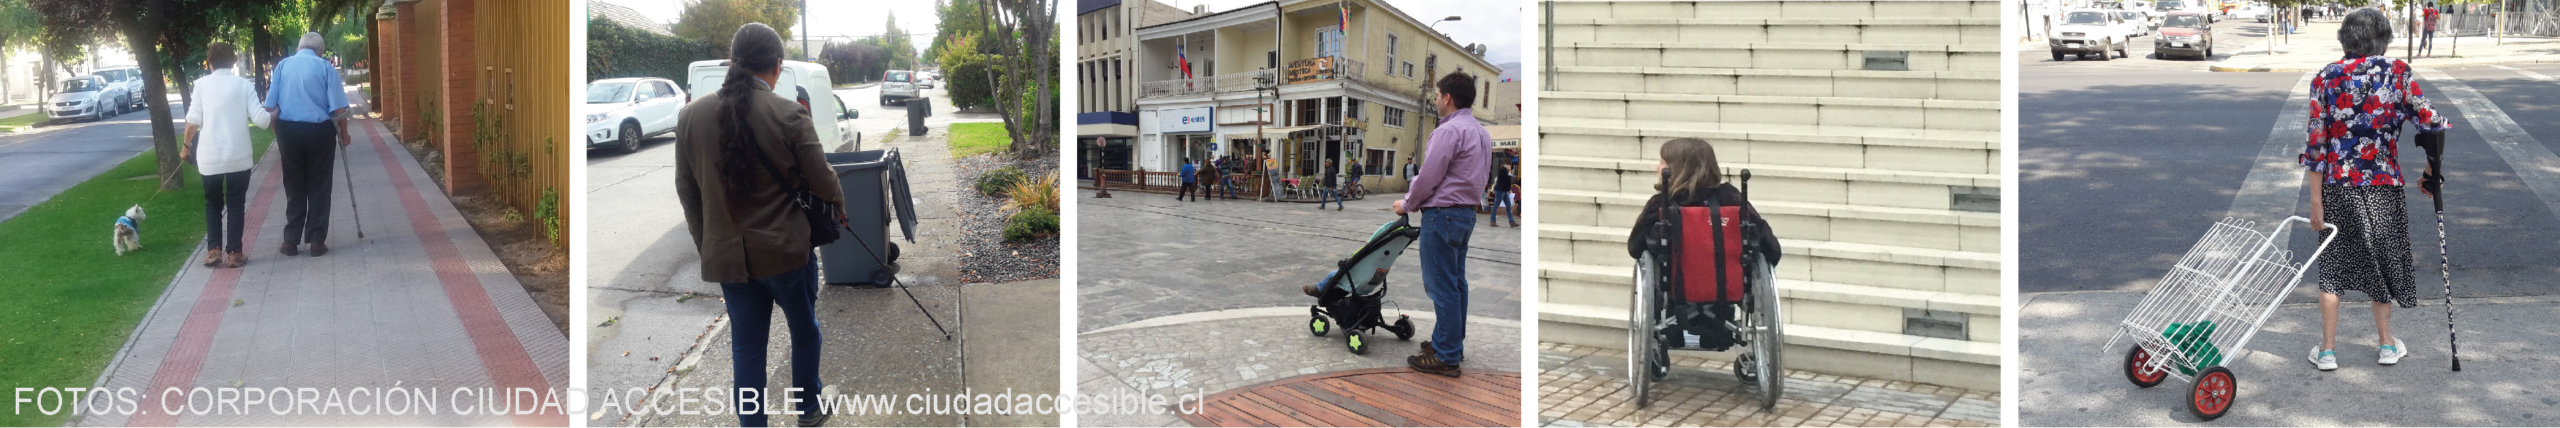 cinco fotografías que muestran a dos personas mayores caminando por una vereda, una persona ciega con un basurero frente a el en la vereda, un hombre llevando un coche de niños, una joven en silla de ruedas enfrentando una escalera y una mujer mayor con bastón llevando un carro de compras